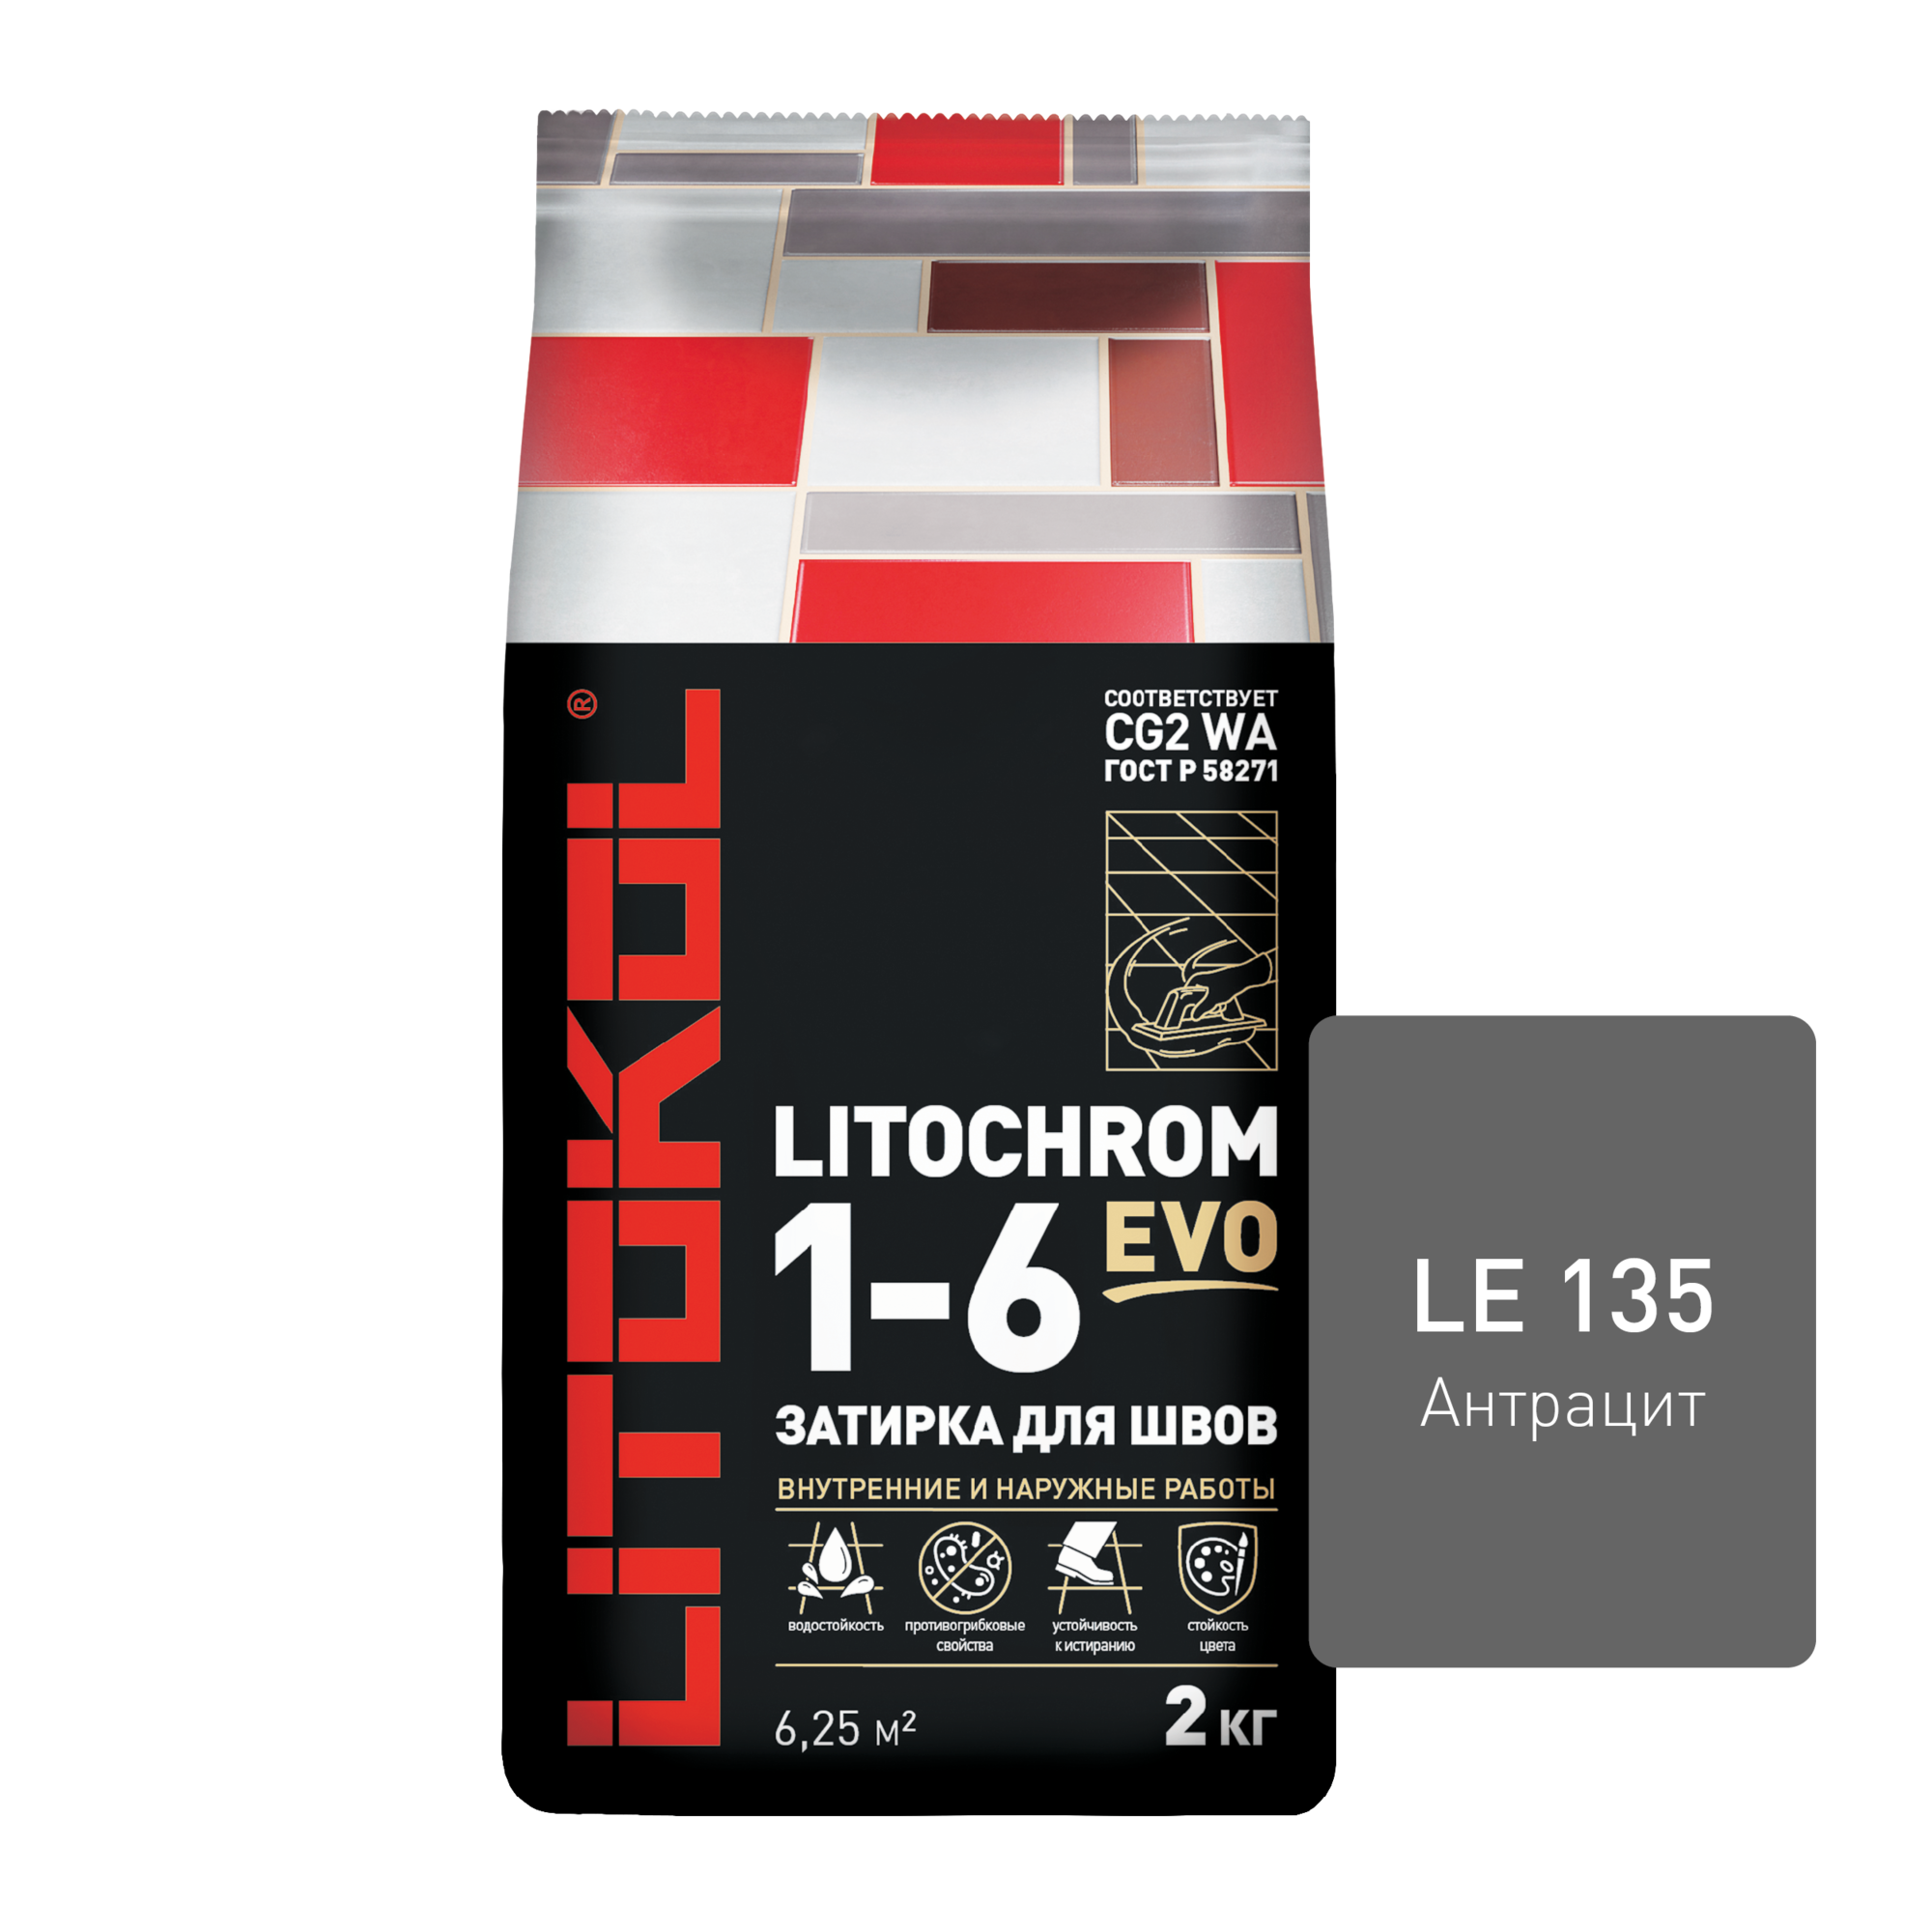 Затирка LITOCHROM EVO 1-6 мм LE.135 Антрацит ( пакет 2 кг )